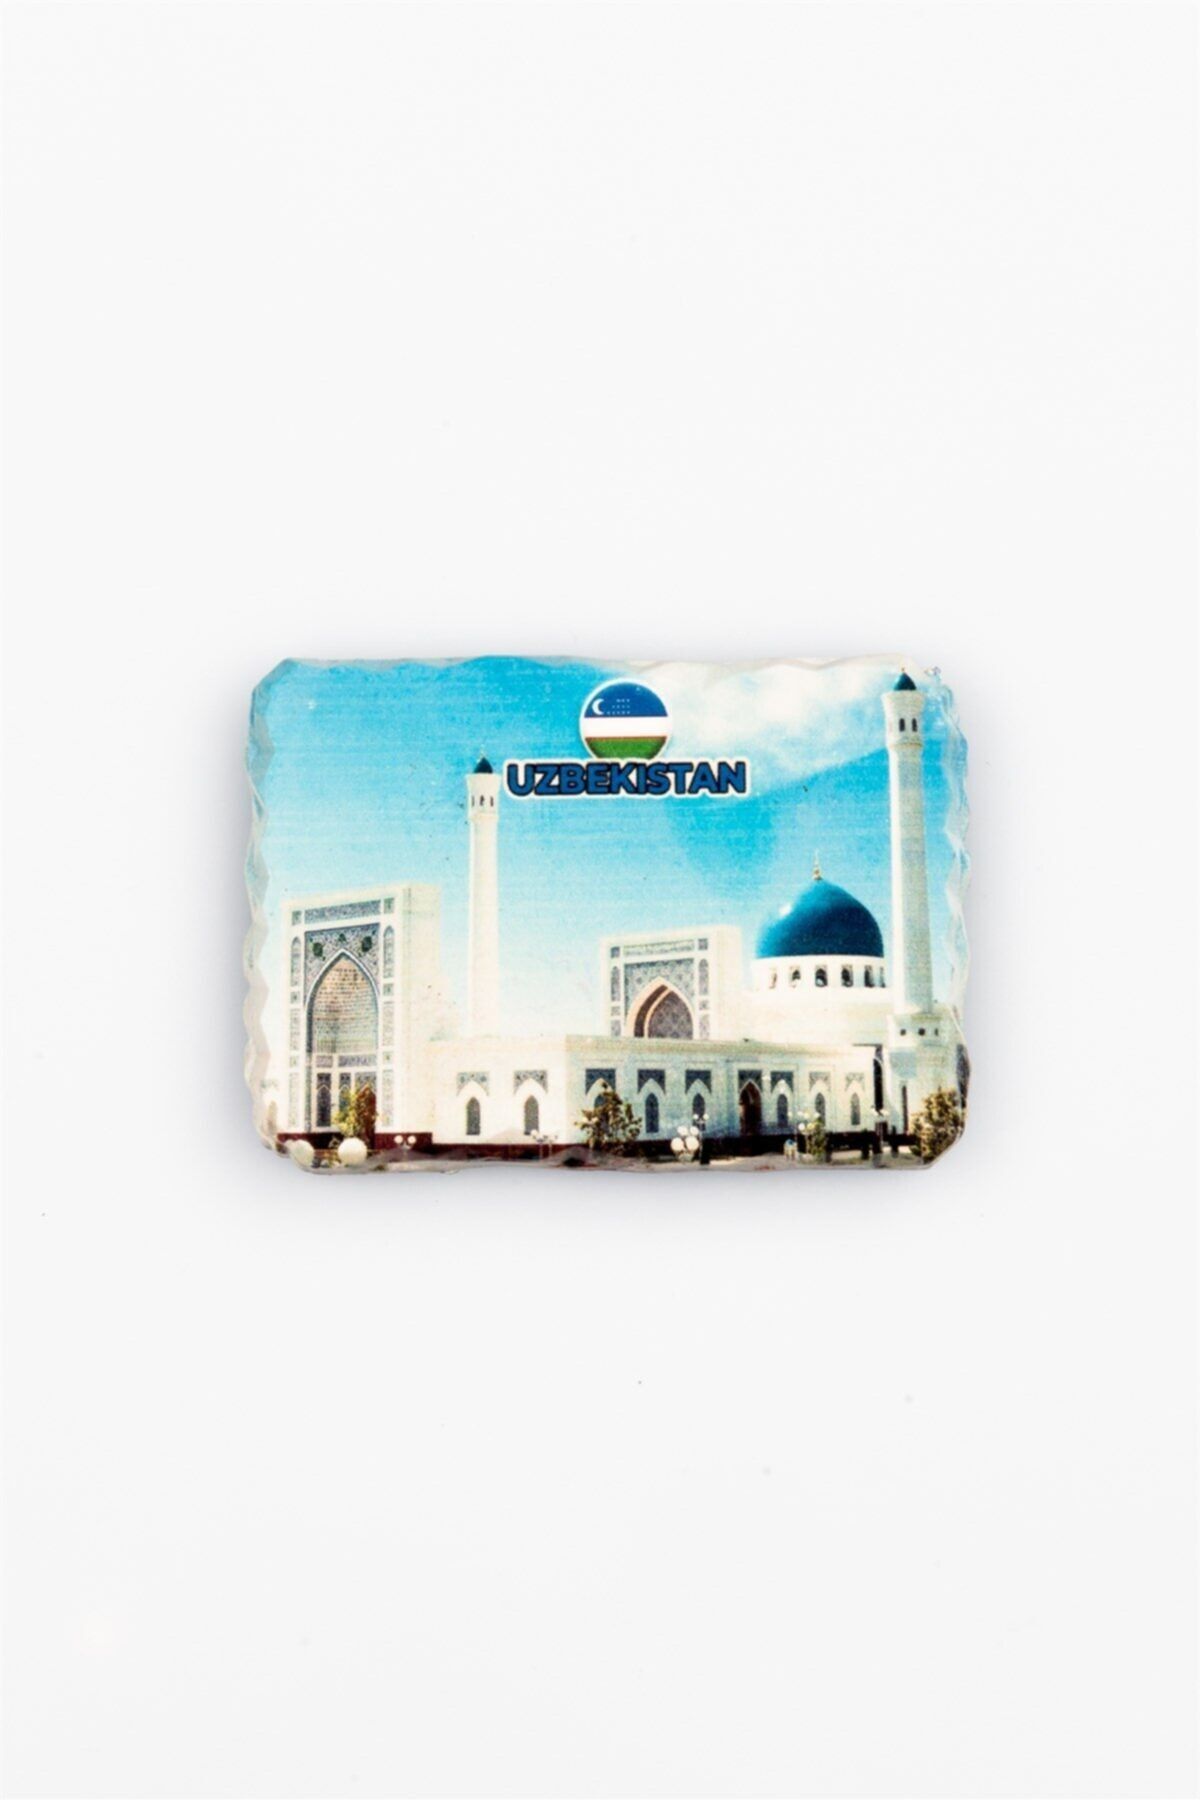 Dünyadan Hediyeler Özbekistan Registan Meydanı Kırık Magnet